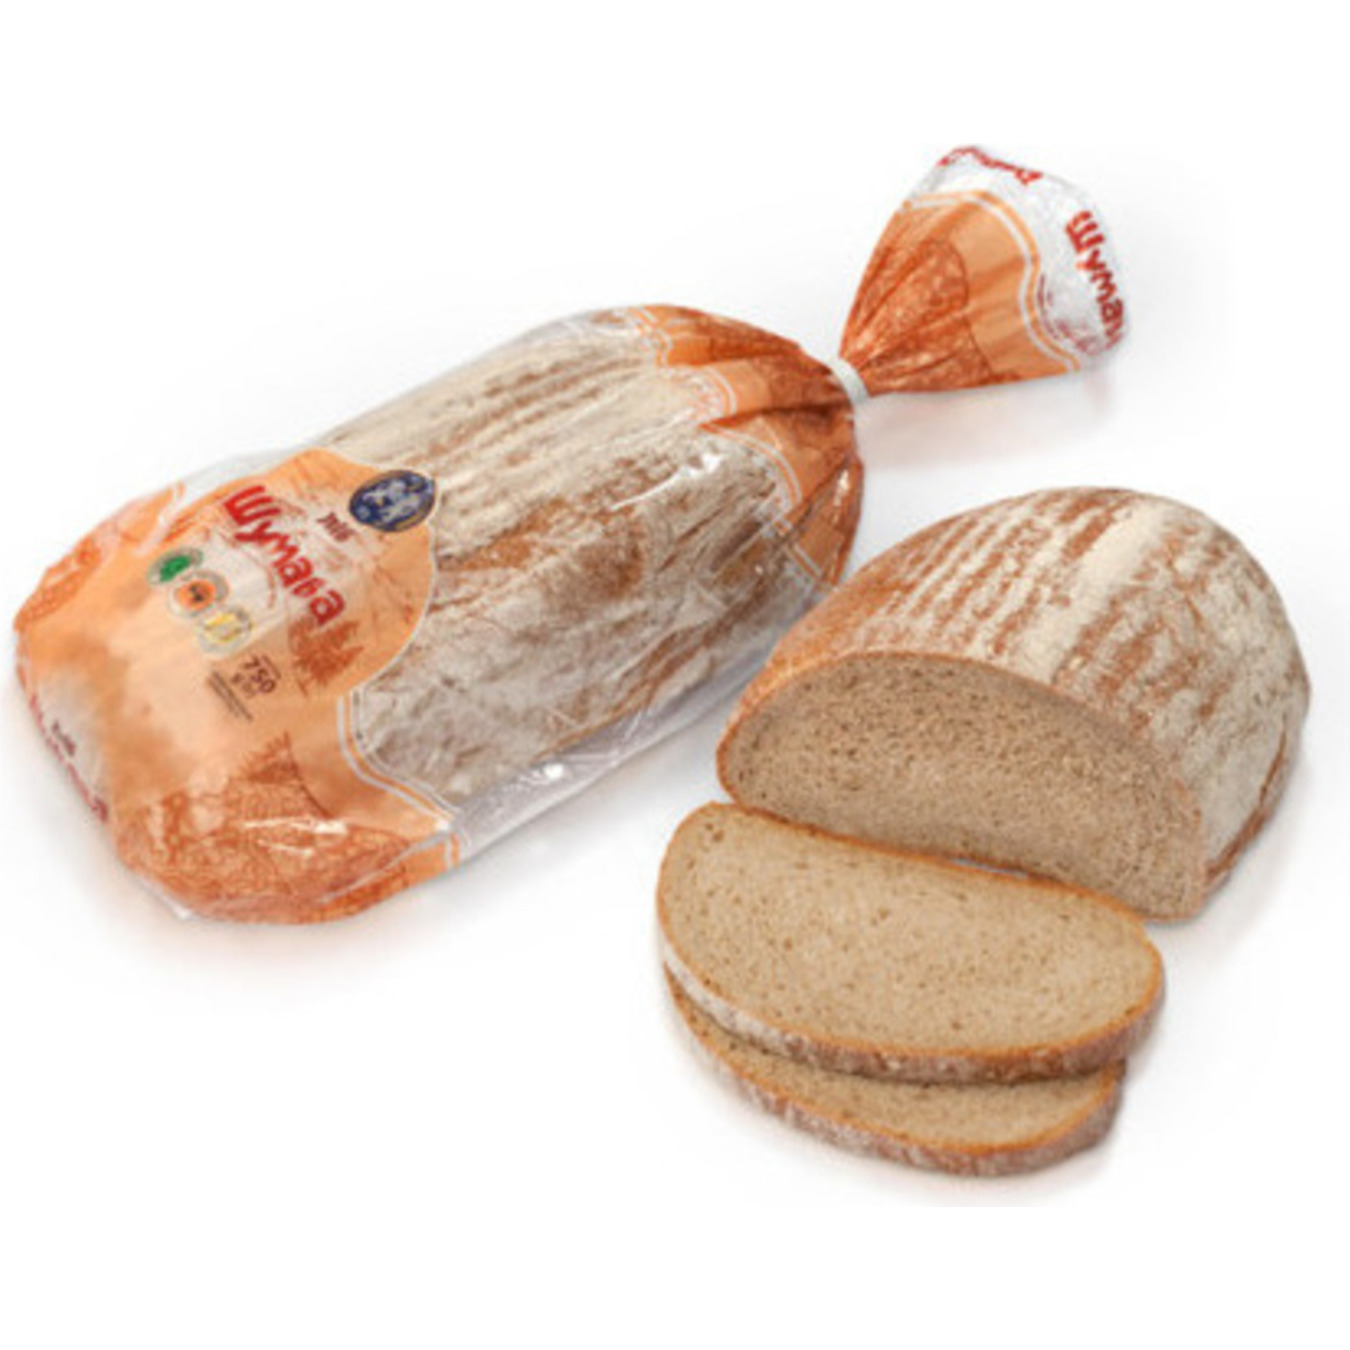 Хліб Кулиничі Шумава половинка нарізаний 375г